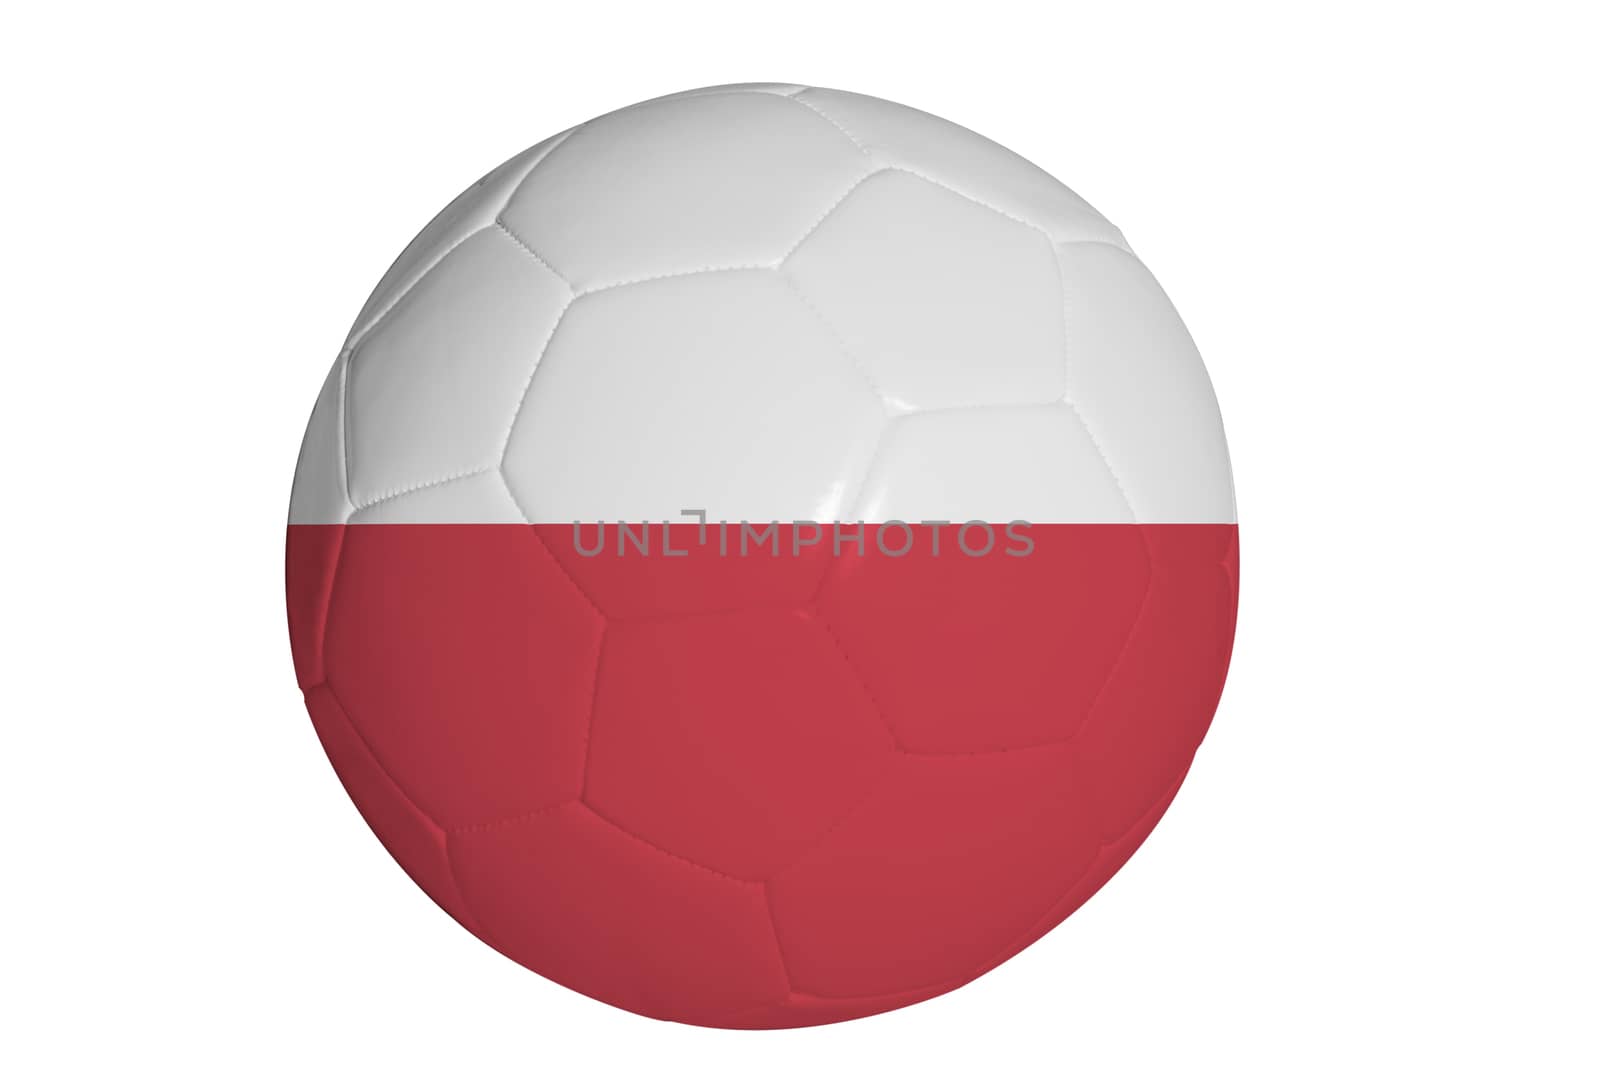 Polish flag graphic on soccer ball